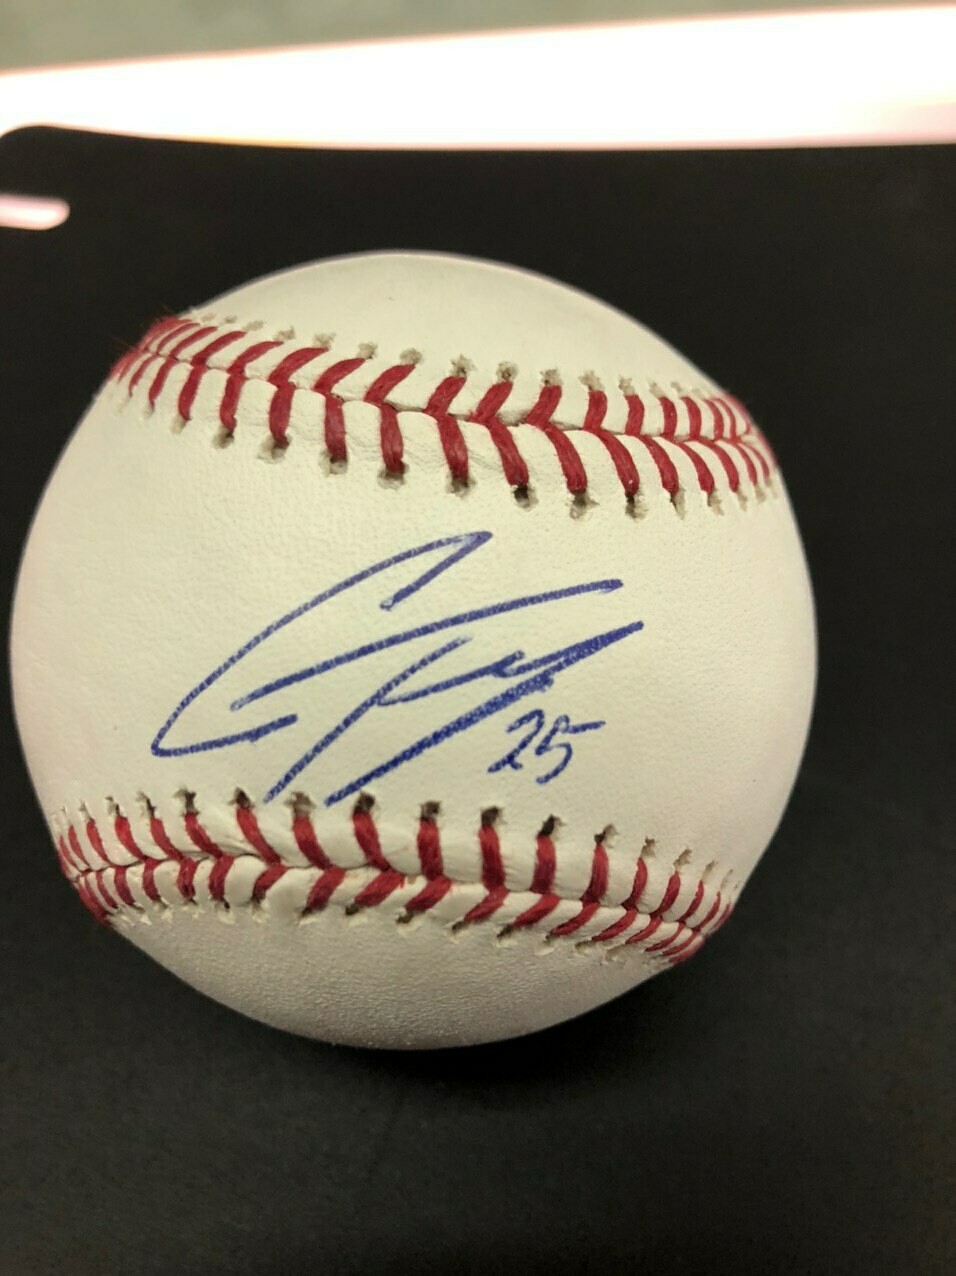 Gleyber Torres signed baseball - JSA cert.